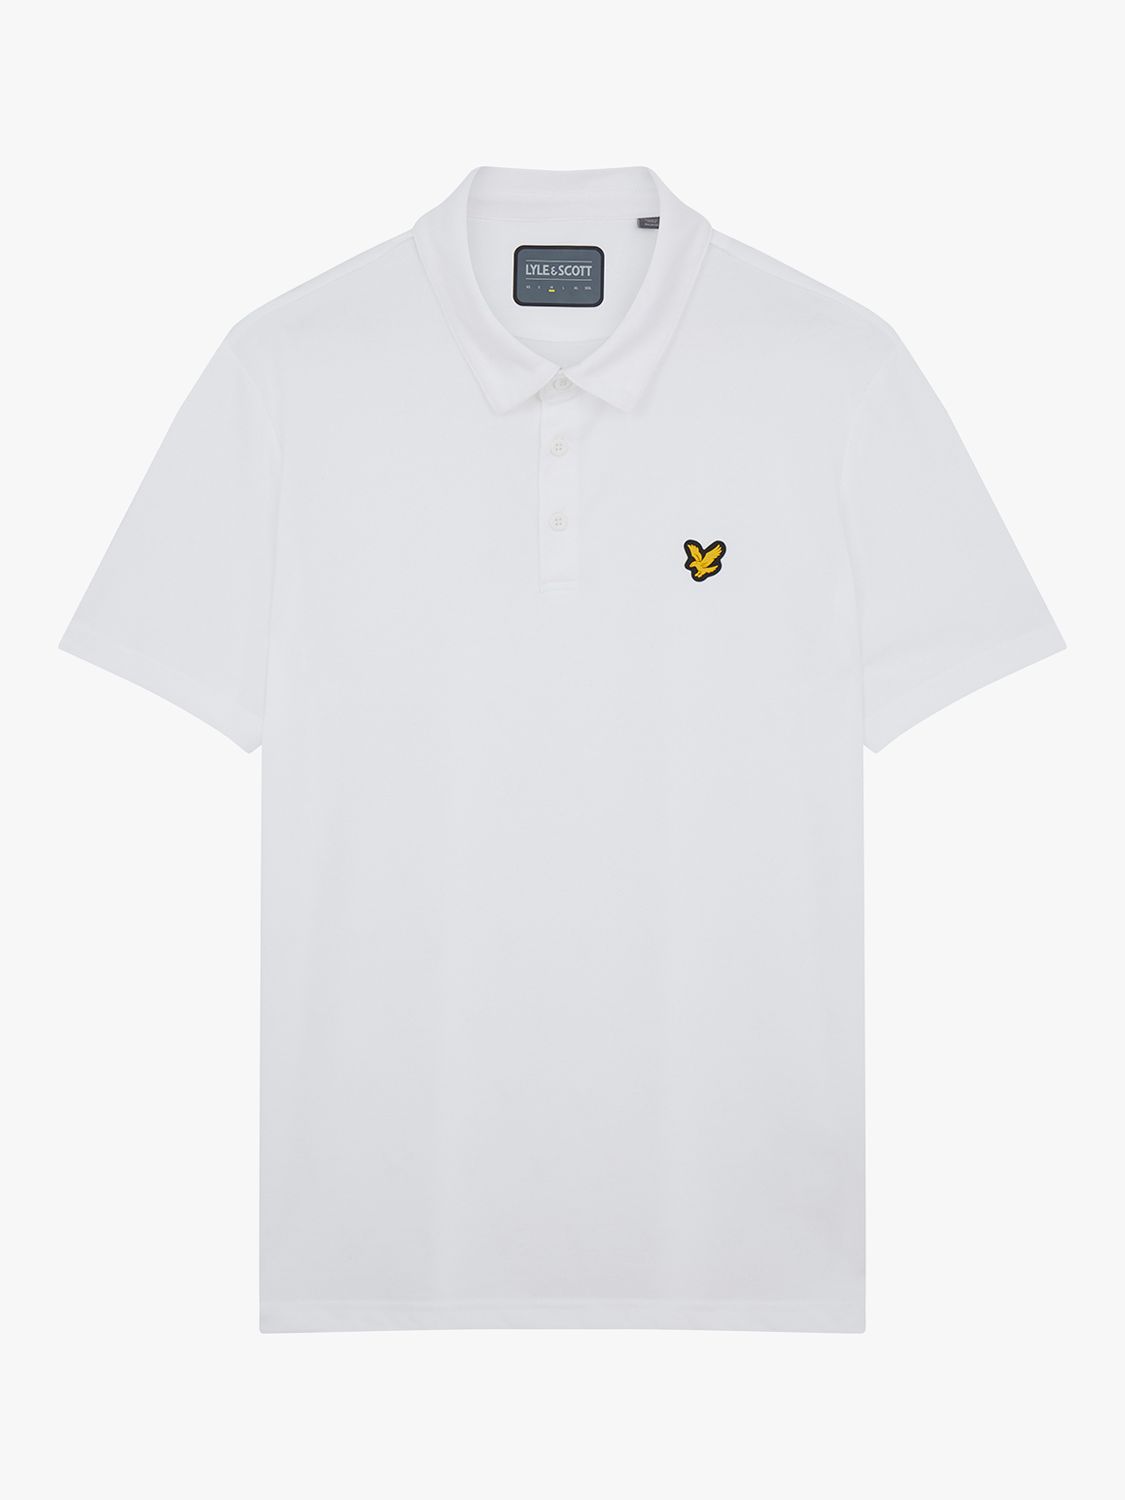 Lyle & Scott Jacquard Polo Shirt, White, XS